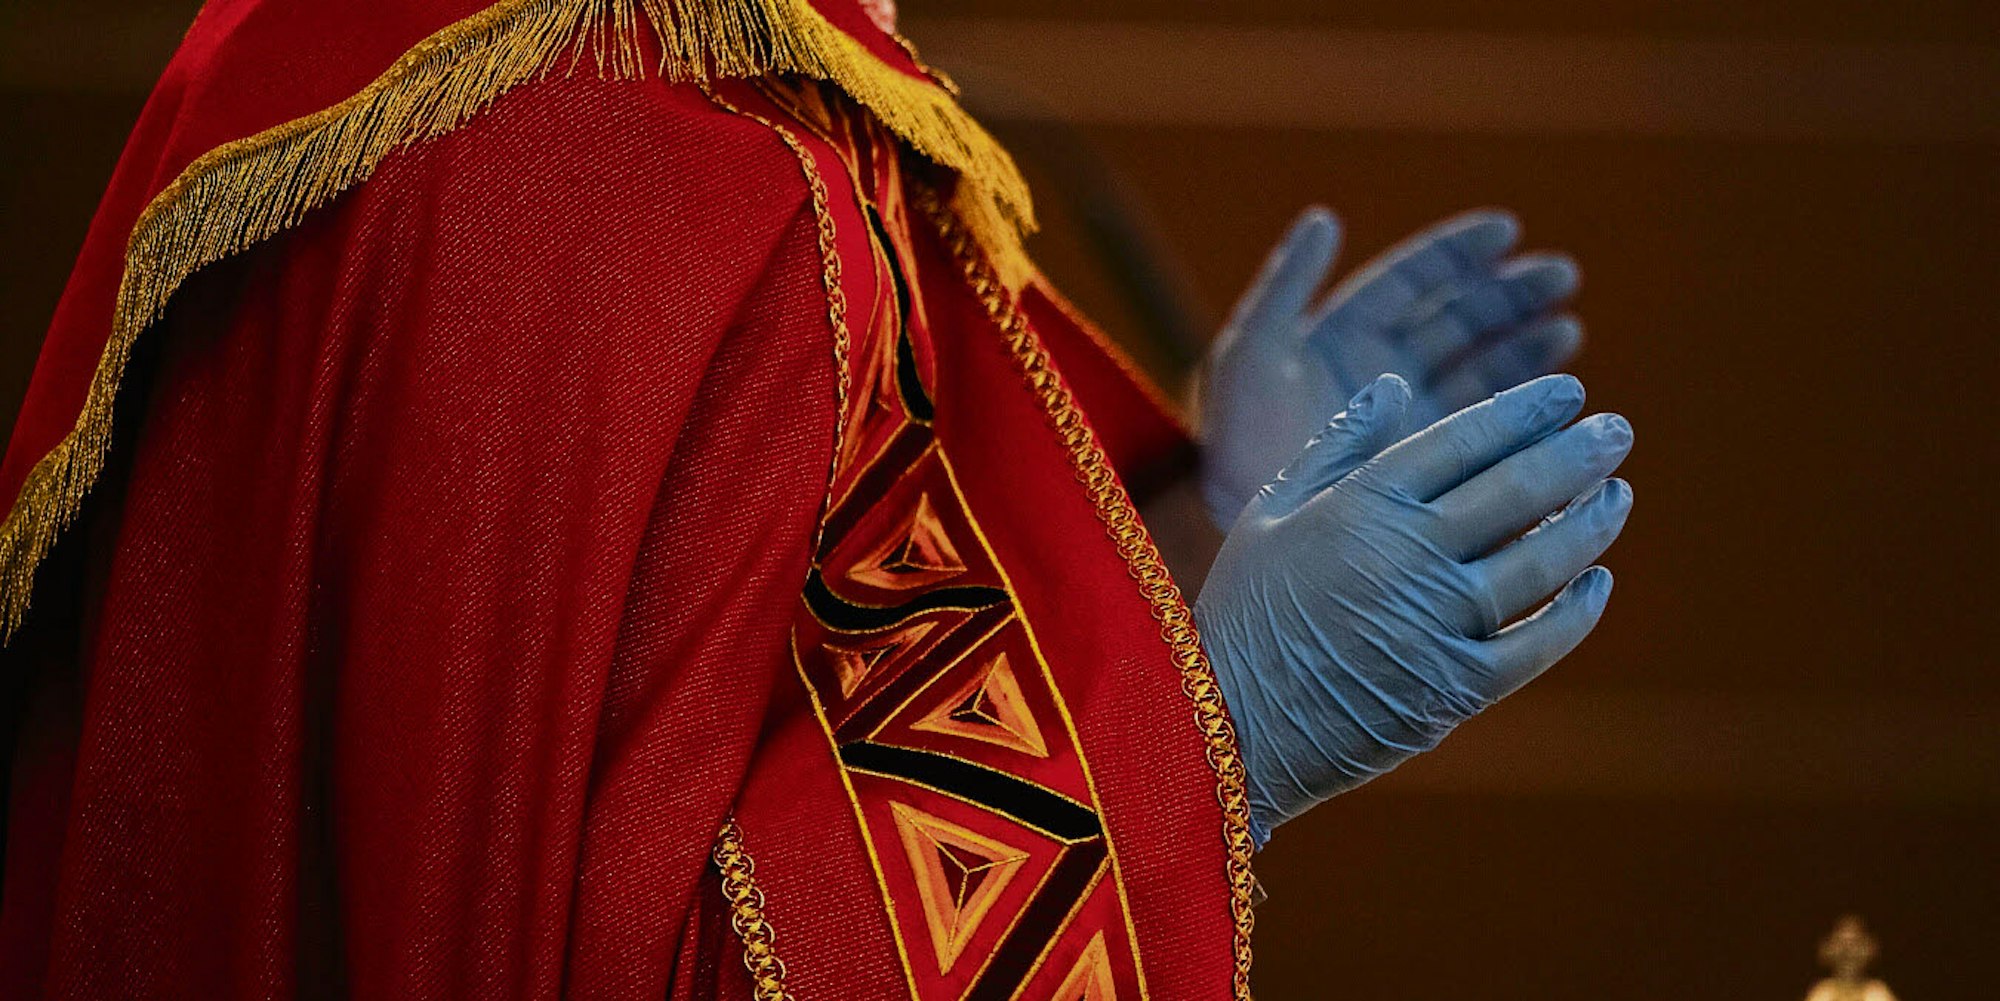 Italienischer Priester mit Mundschutz und Handschuhen während der Karfreitagsliturgie